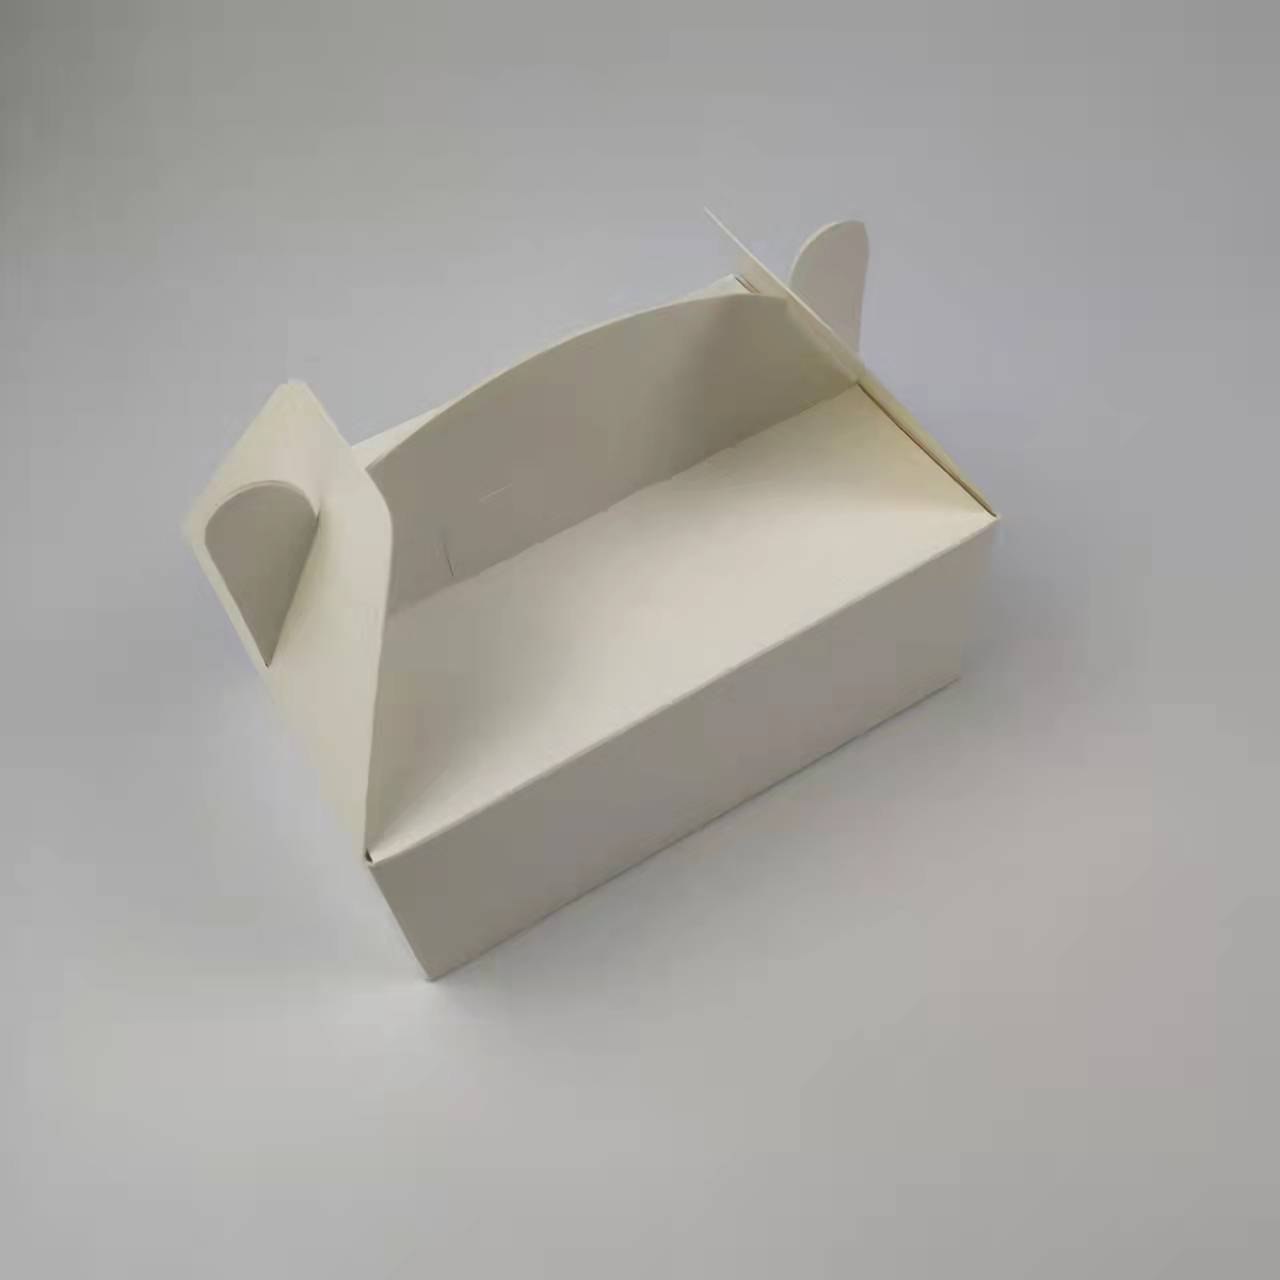 paper takeaway boxes